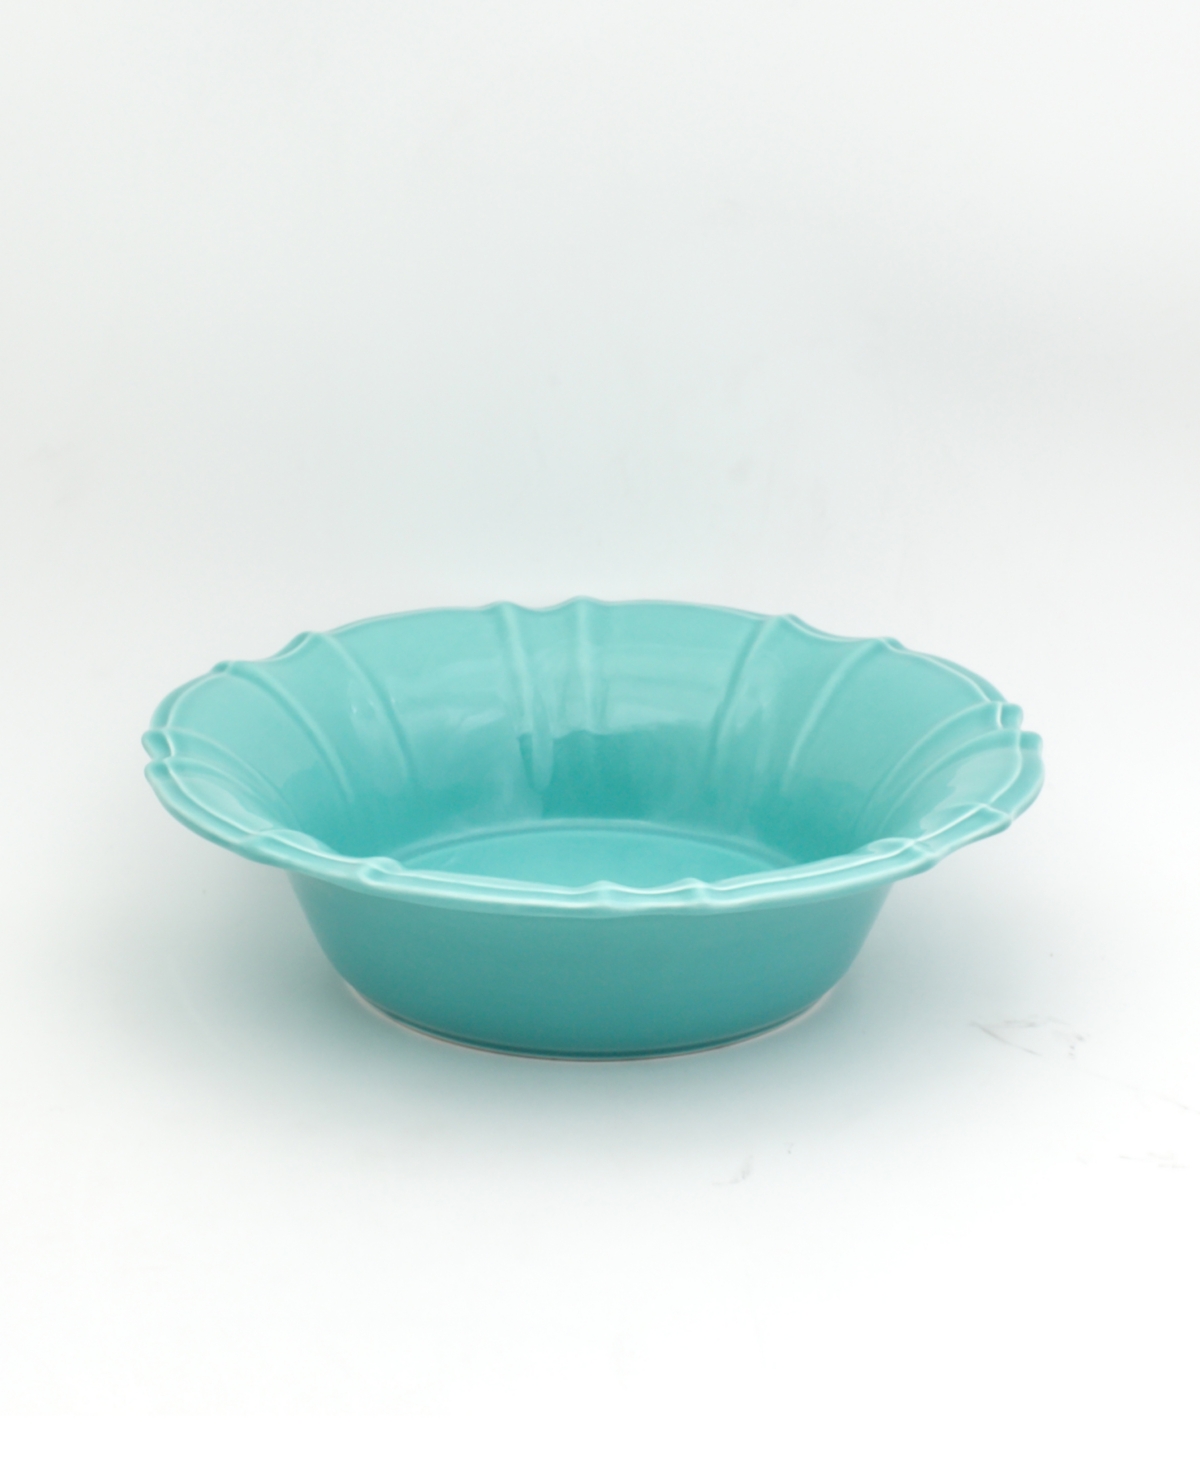 Chloe Turquoise Pasta Bowl - Turquoise